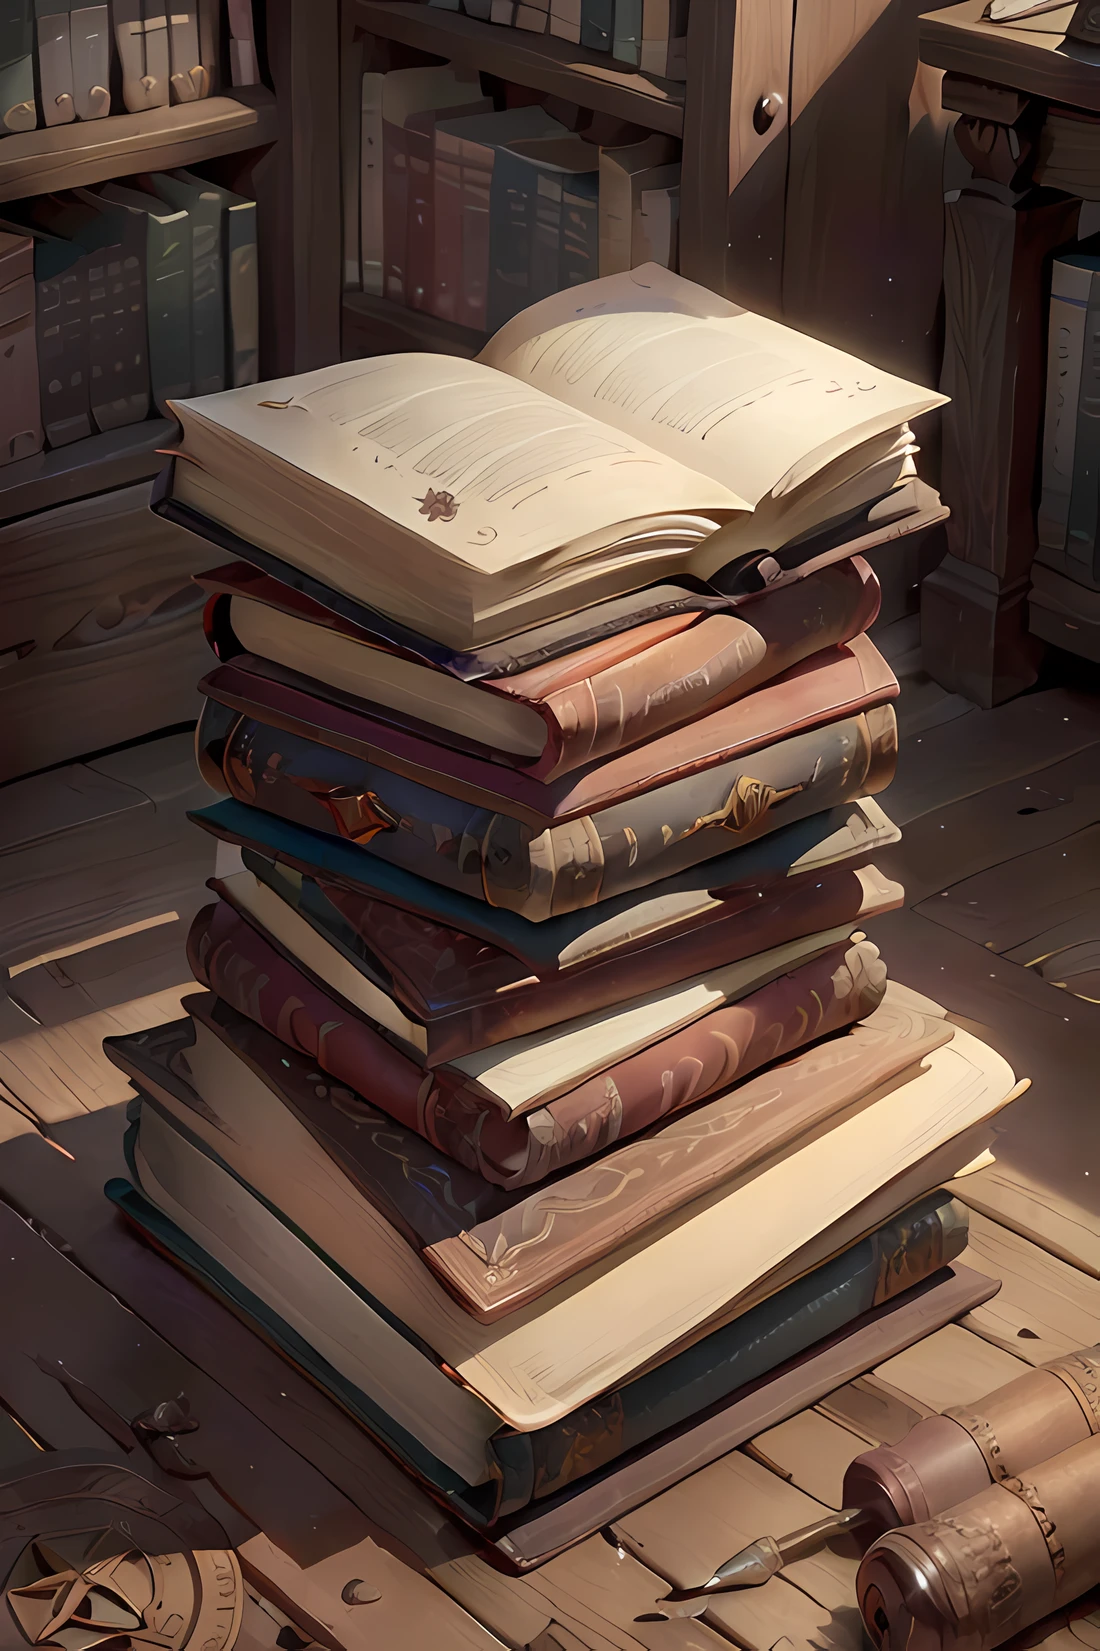 中央に台座のある古い図書館, 茶色の革カバーの古い本, 本に書かれた記号, マモレフロア